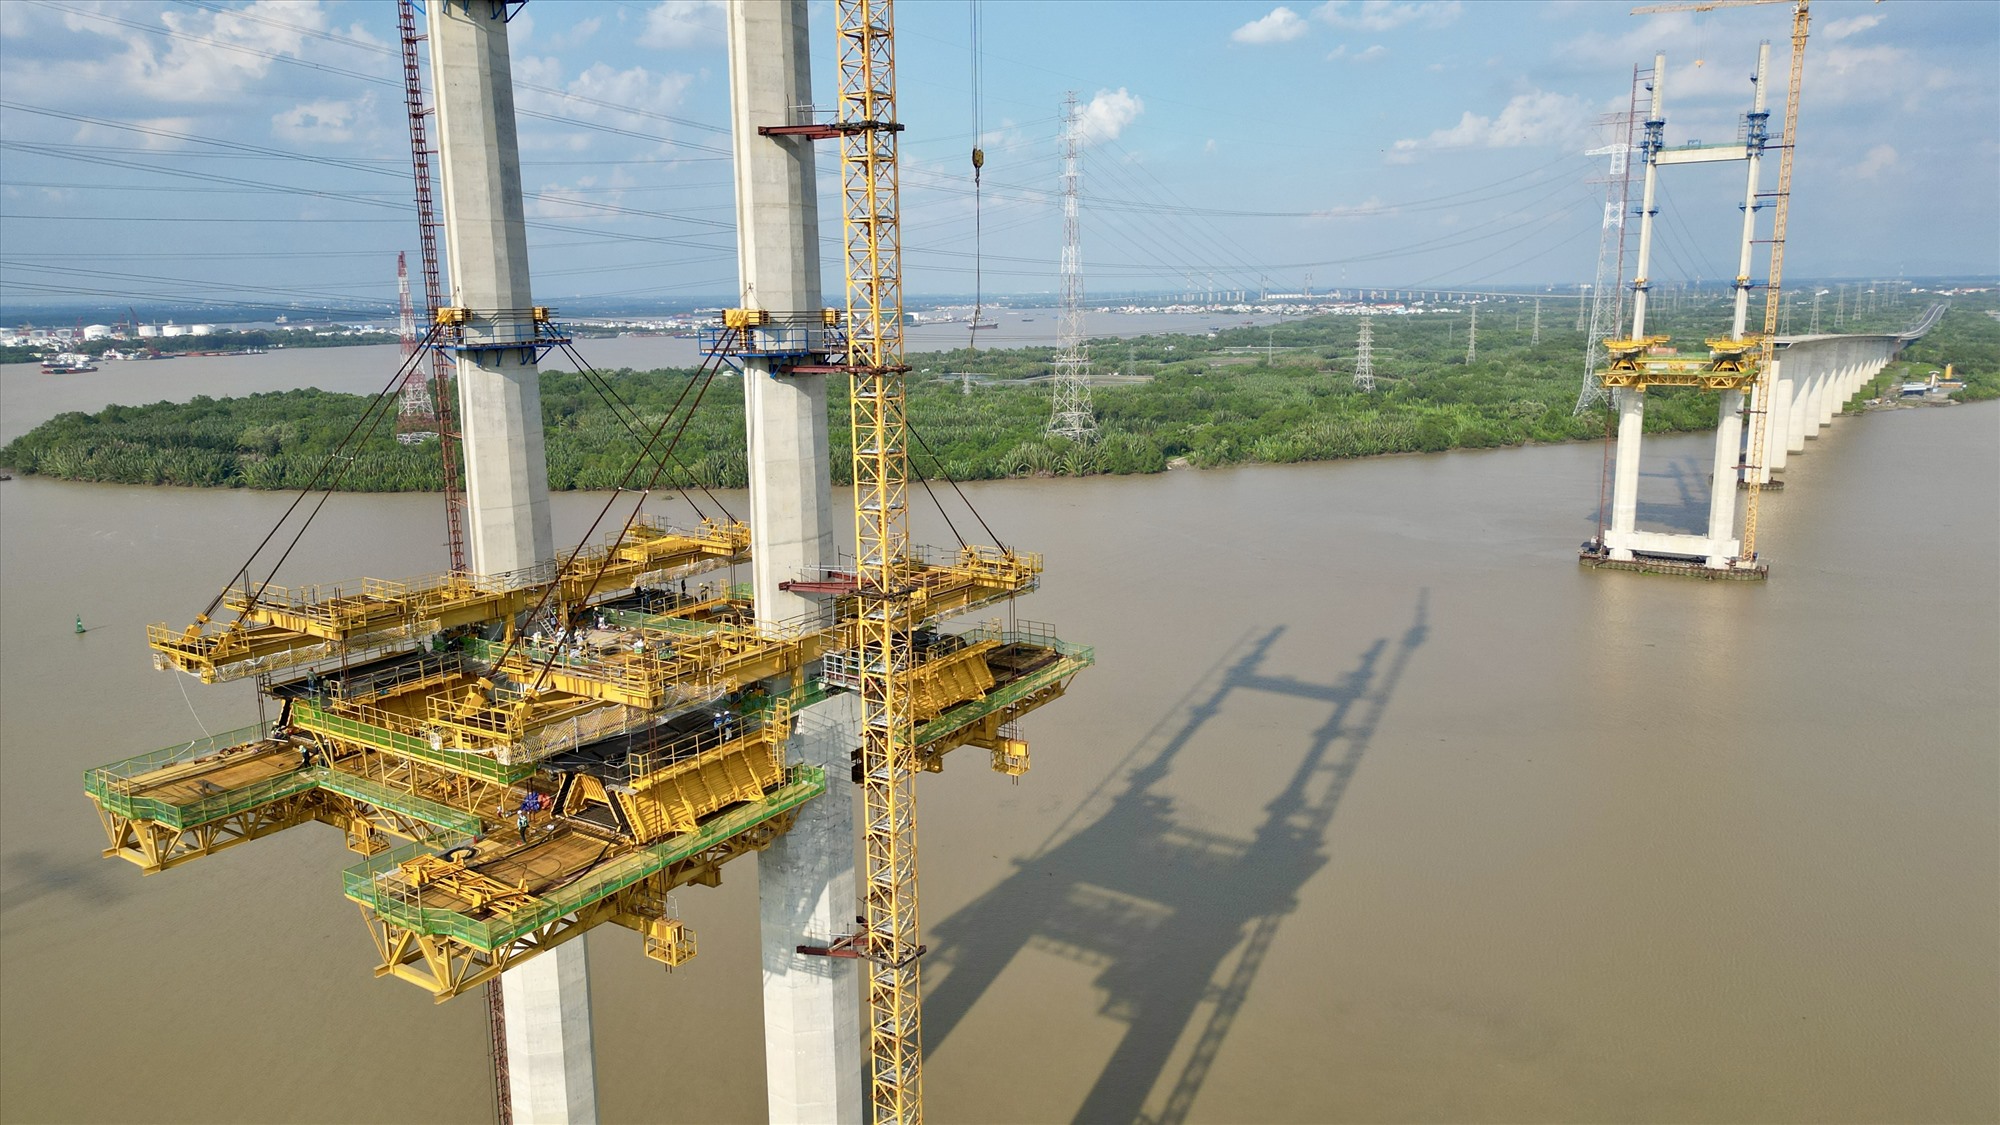 Độ dài 2 nhịp chính của cầu giữa lòng sông là 375m, đặt trên hai trụ cầu cao 155m với móng trụ tháp có kết cấu dạng móng cọc cừ ống thép. Dự án cầu sử dụng hơn 25m chiều dài cọc khoan nhồi các loại, hơn 7.000m cọc vòng vây ống thép đường kính 1,5m, gần 115.000m3 bê tông các loại và khoảng 14.000 tấn cốt thép.